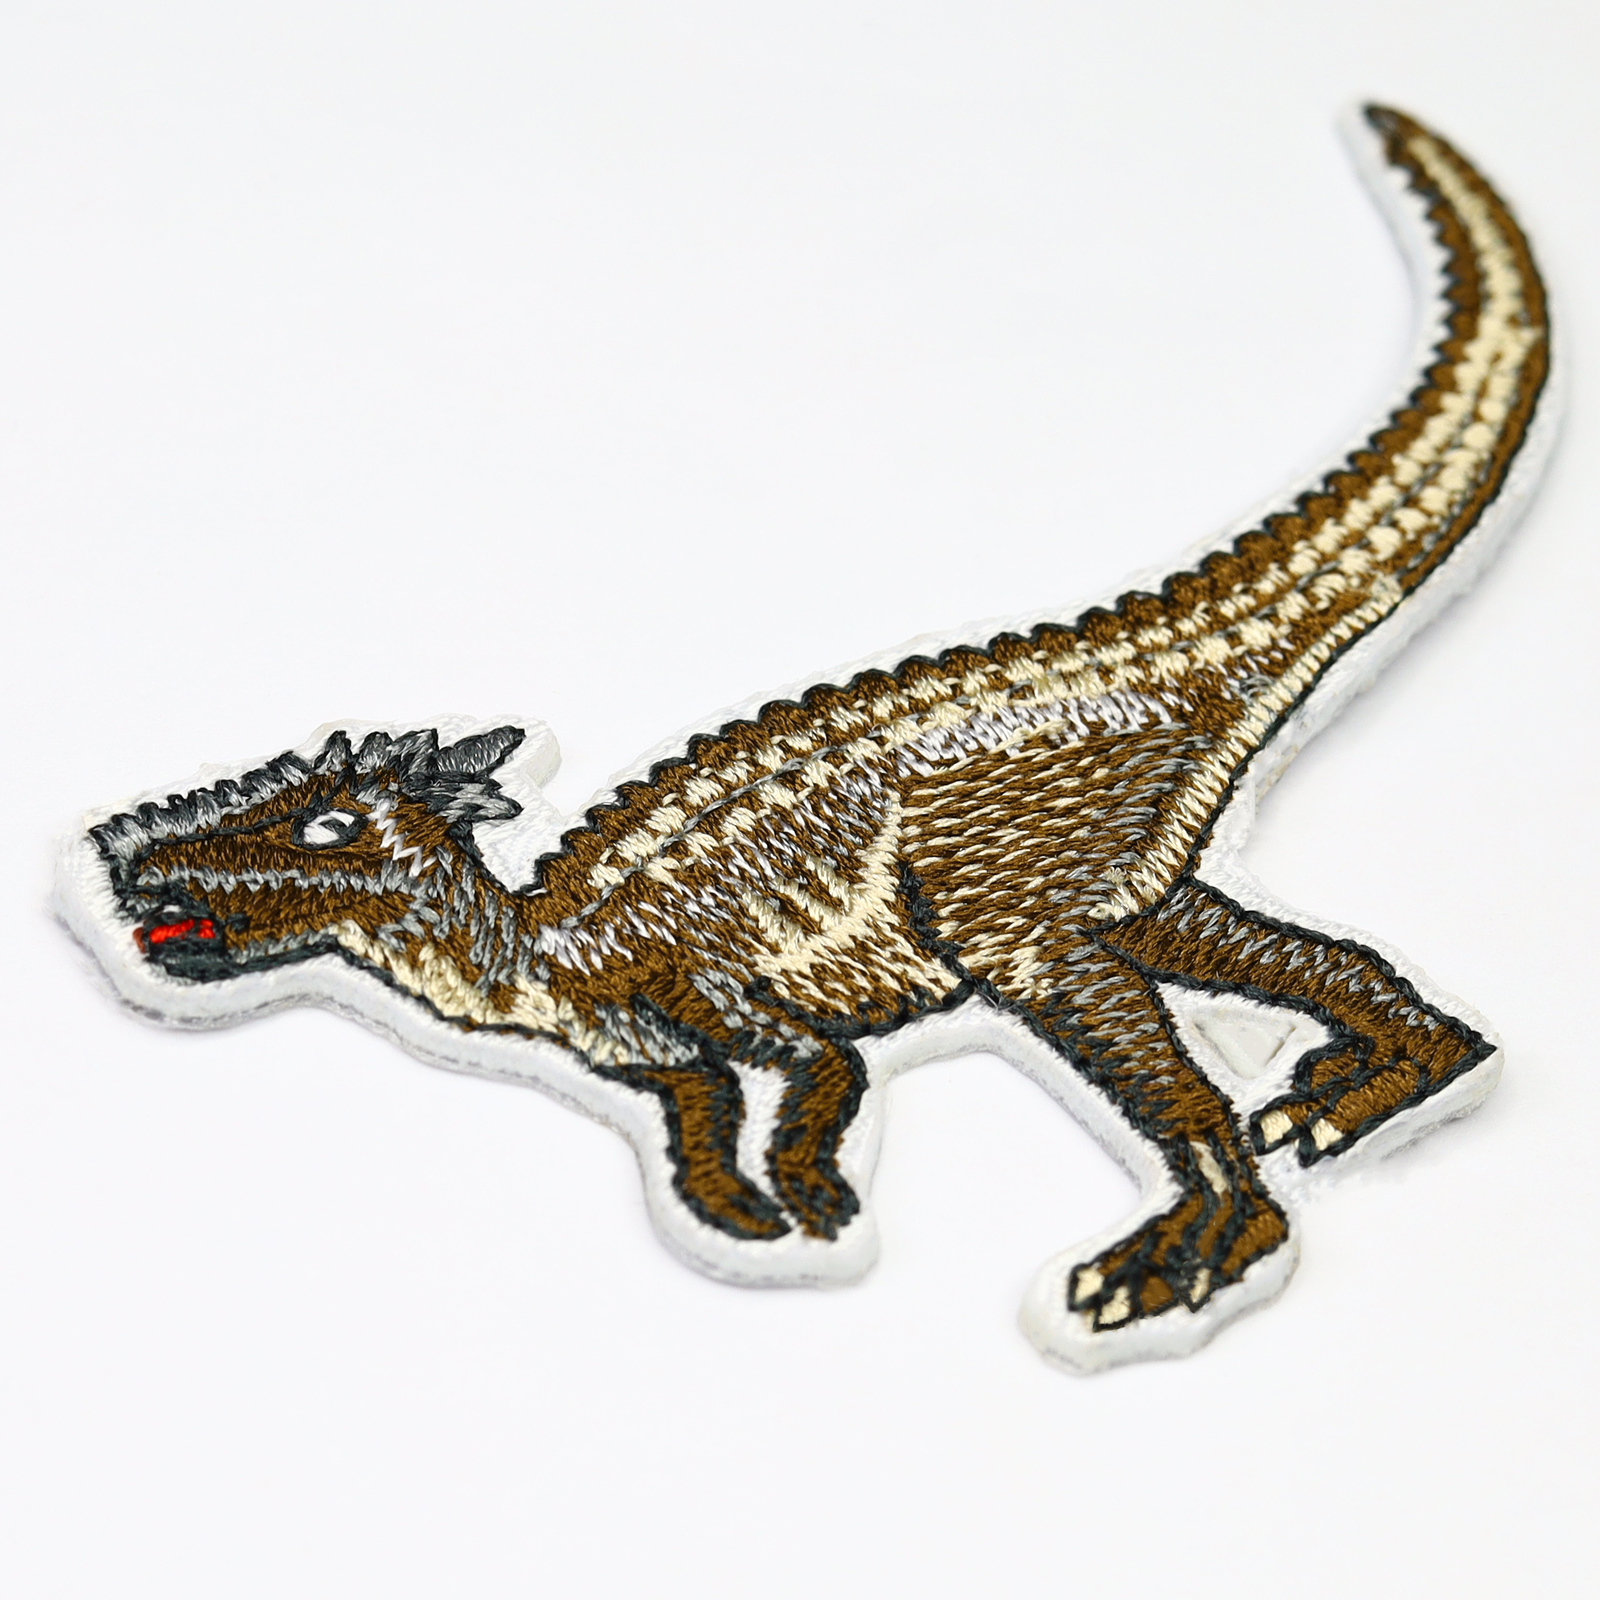 Dracorex 2 - Patch